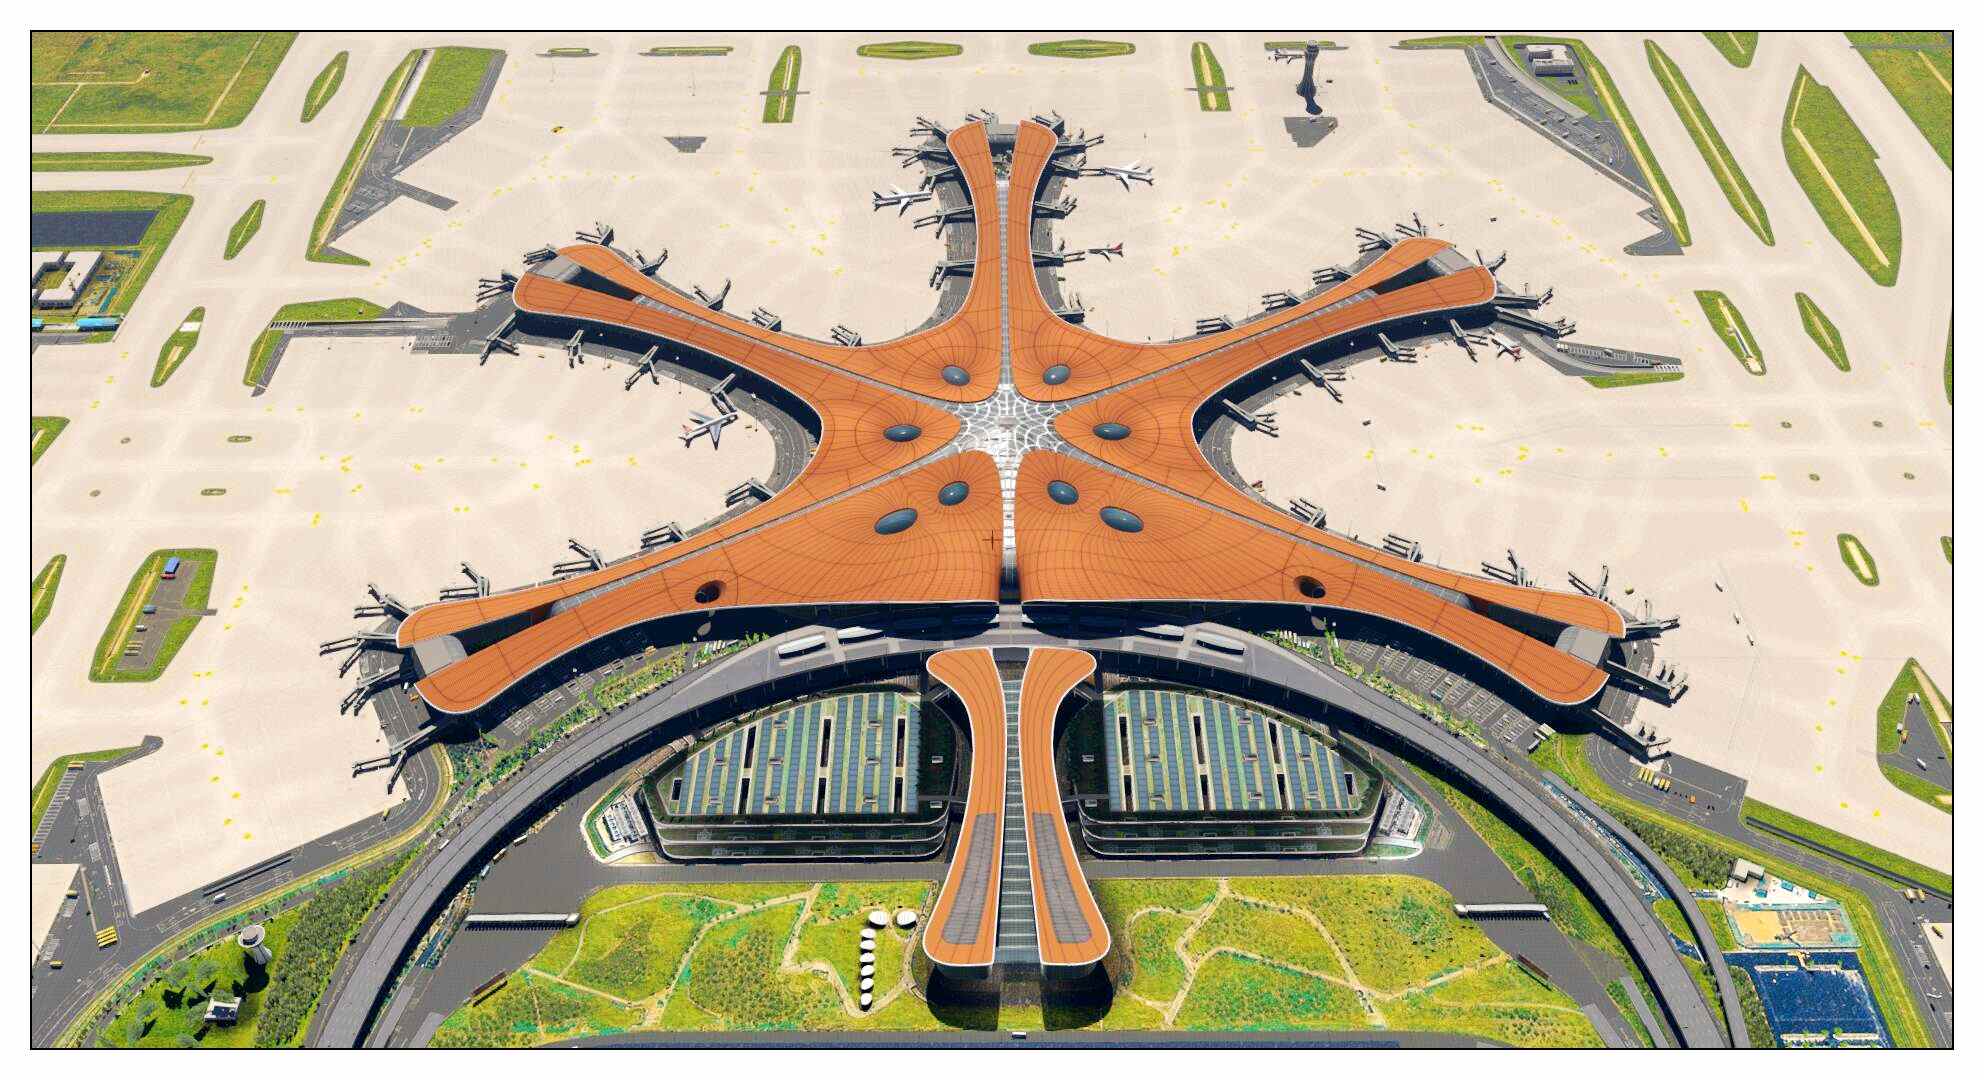 【X-Plane】ZBAD北京大兴国际机场-正式发布-9885 